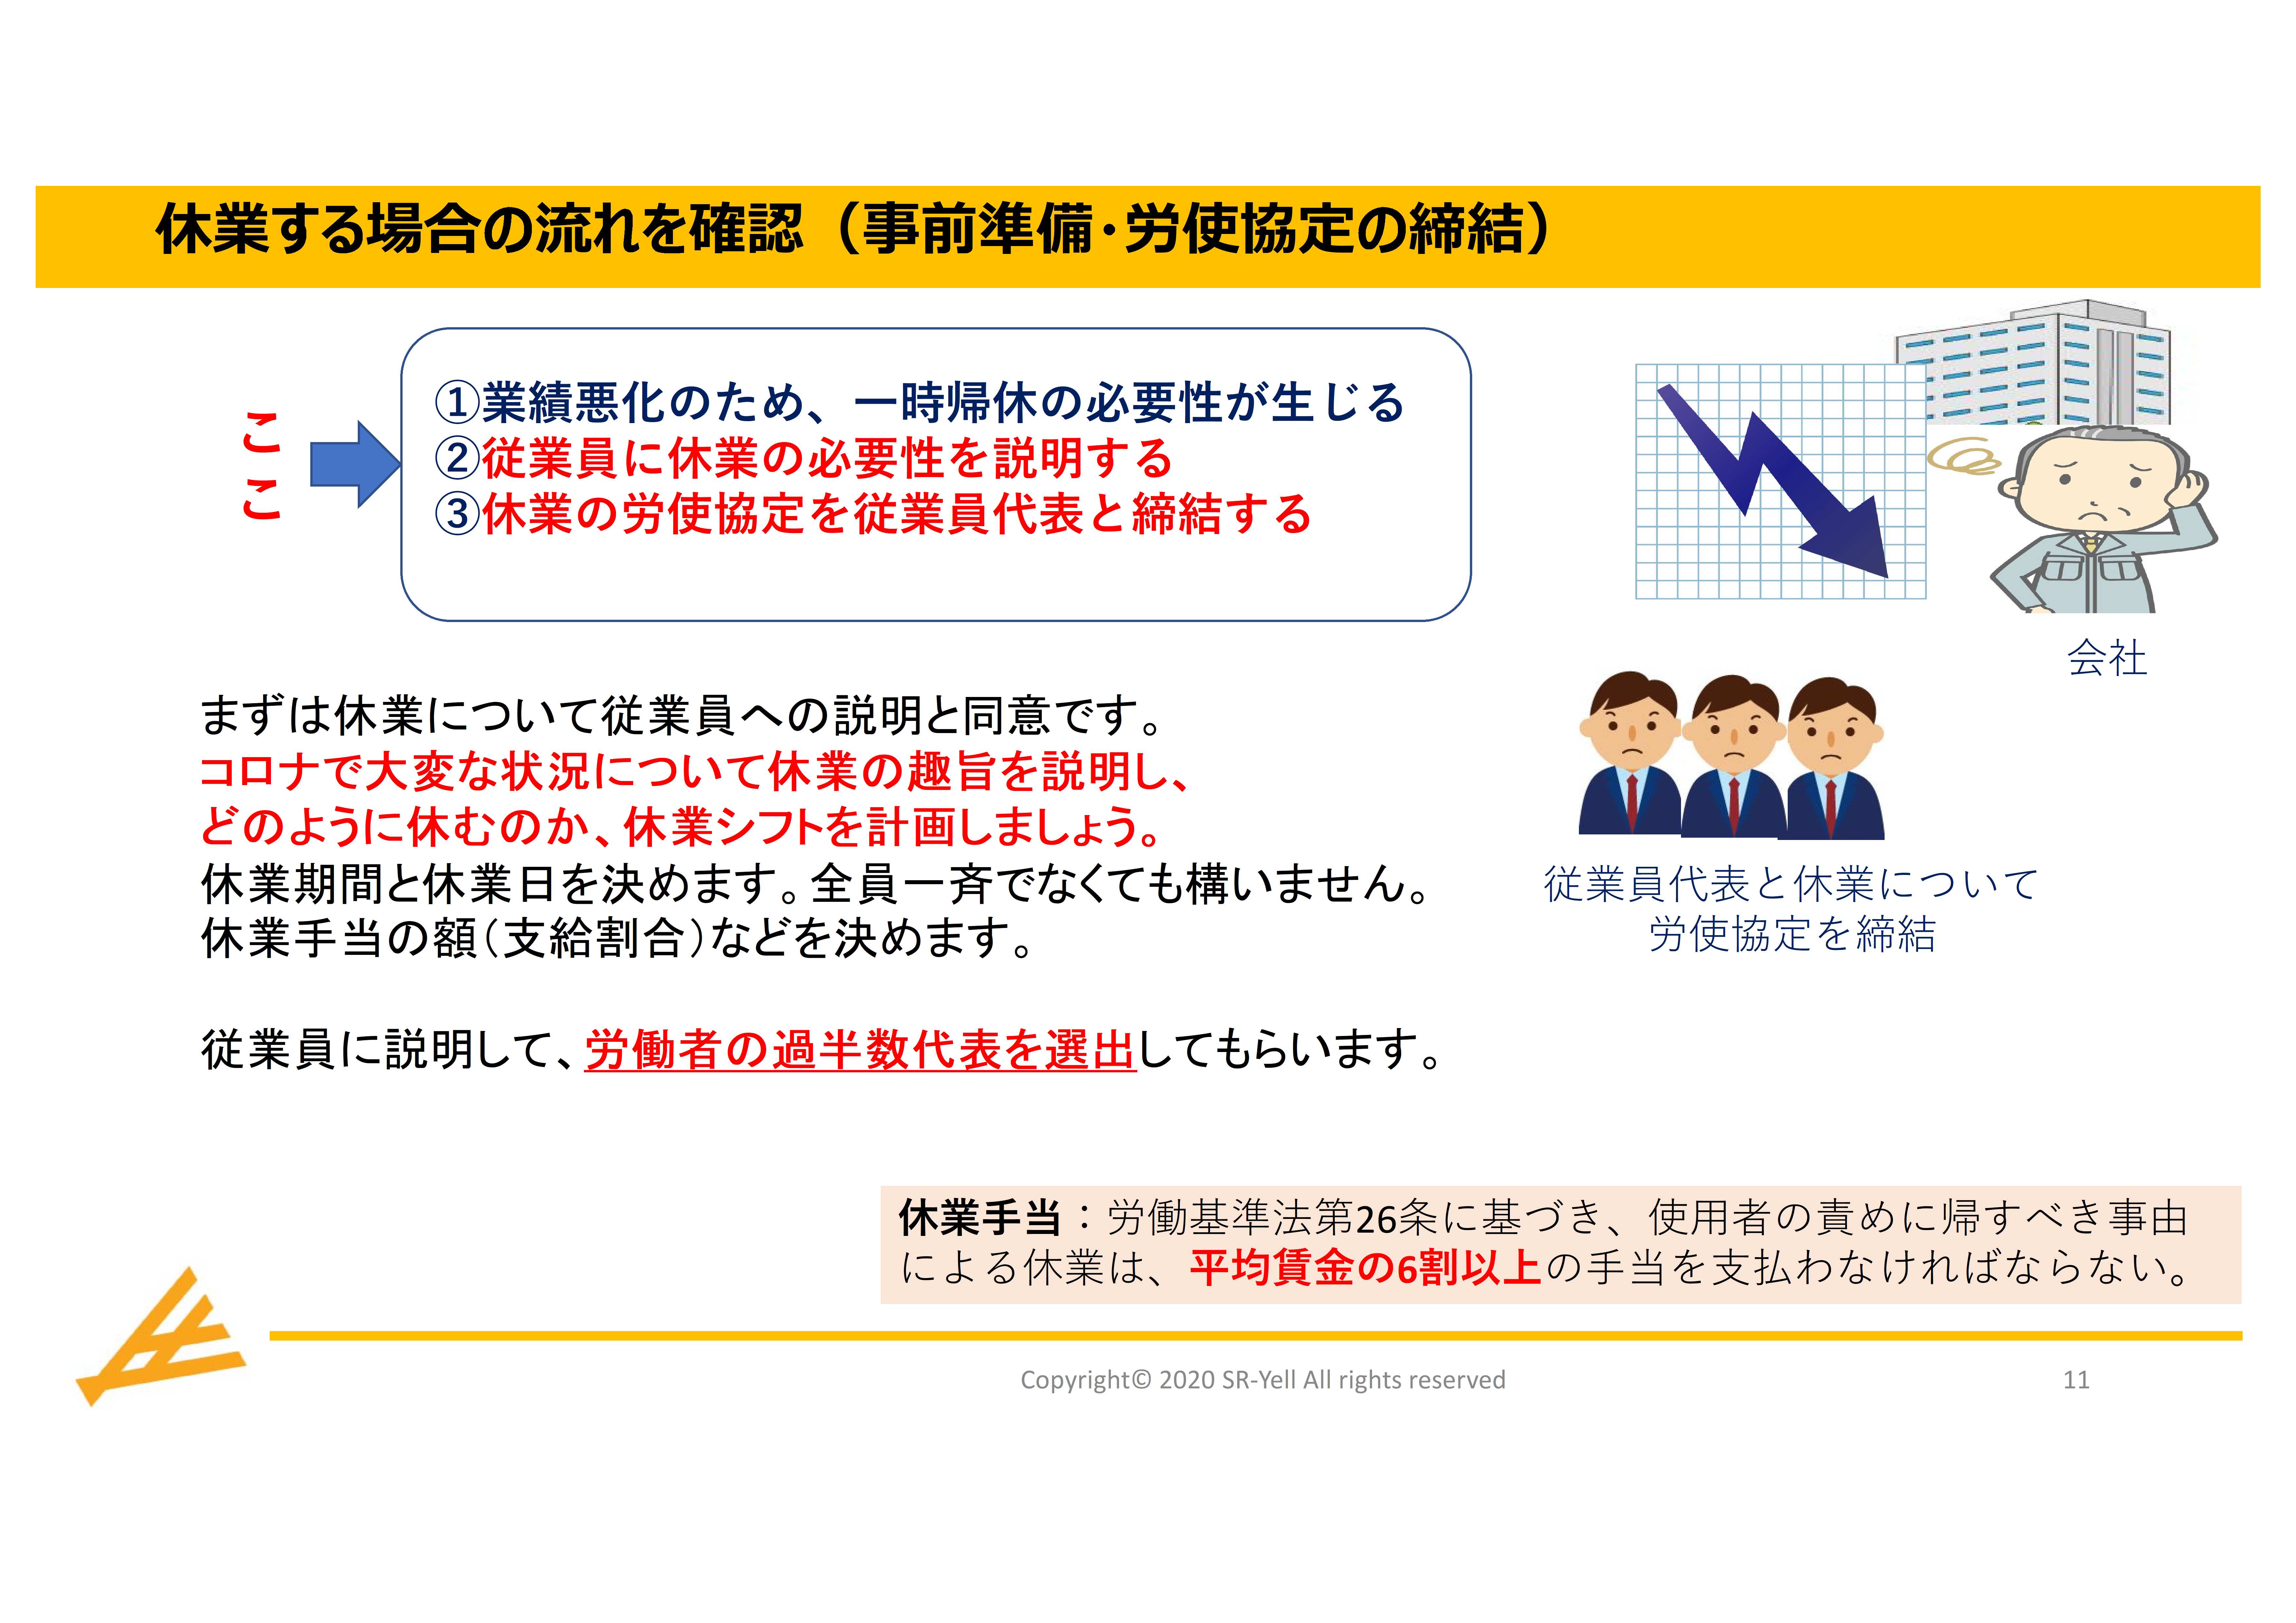 雇用調整助成金 Step1 申請前に準備すべき事項 04 10更新 横浜市 社会保険労務士法人エール